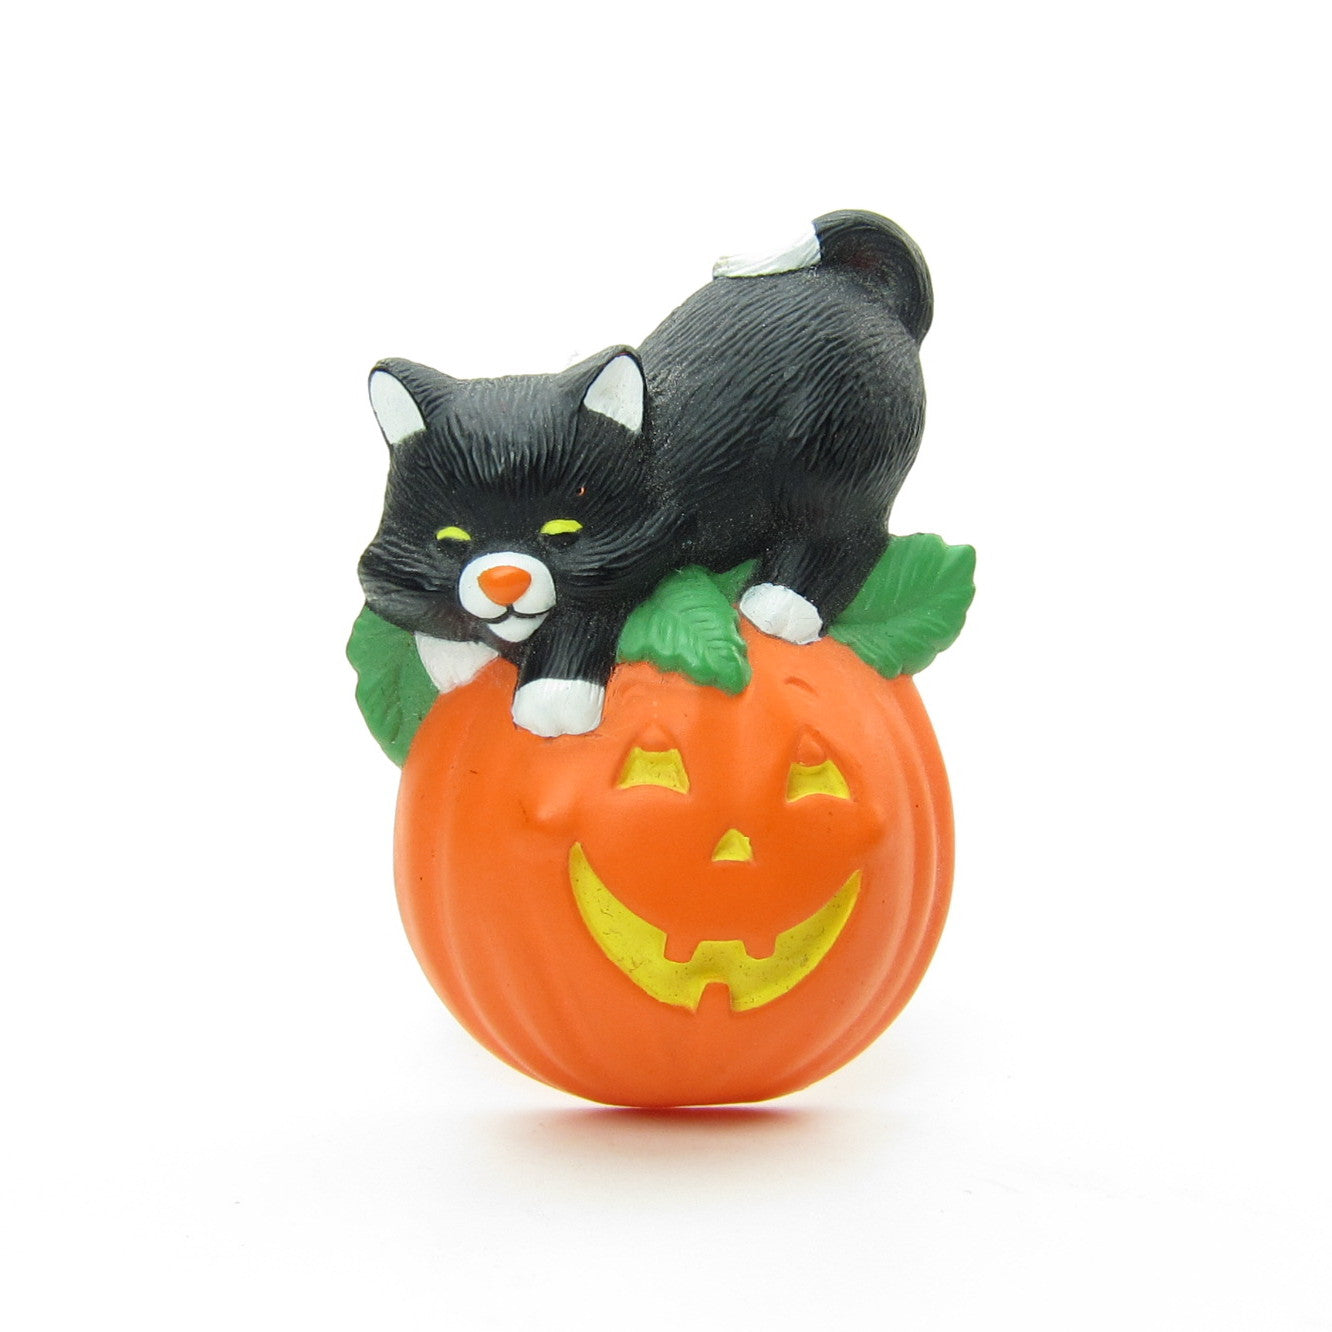 Hallmark black cat on pumpkin Halloween lapel pin